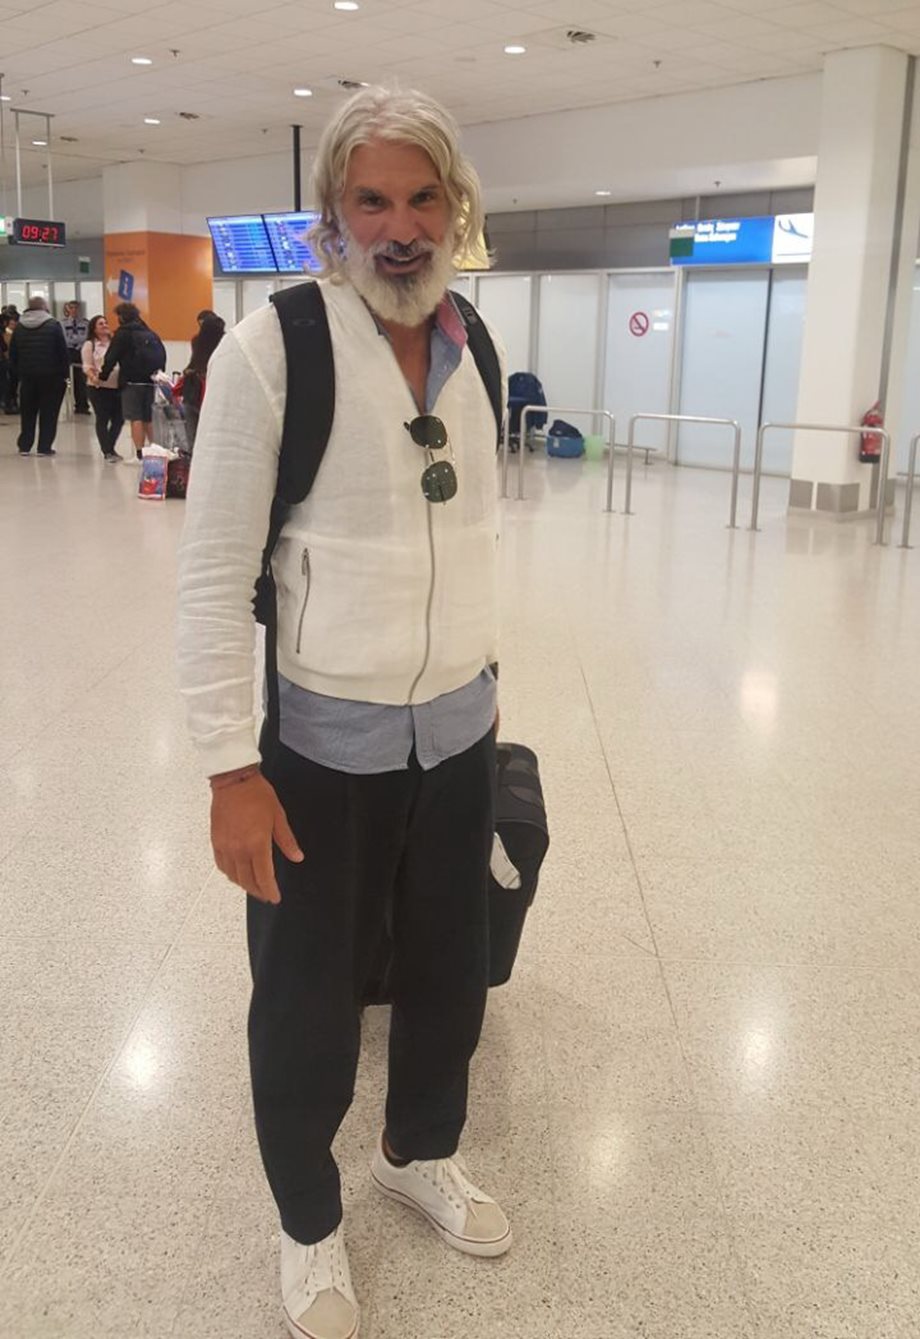 Ο Μάνος Πίντζης επέστρεψε στην Ελλάδα μετά την οικειοθελή αποχώρησή του από το Nomads! Οι πρώτες φωτογραφίες μόνο στο FTHIS.GR